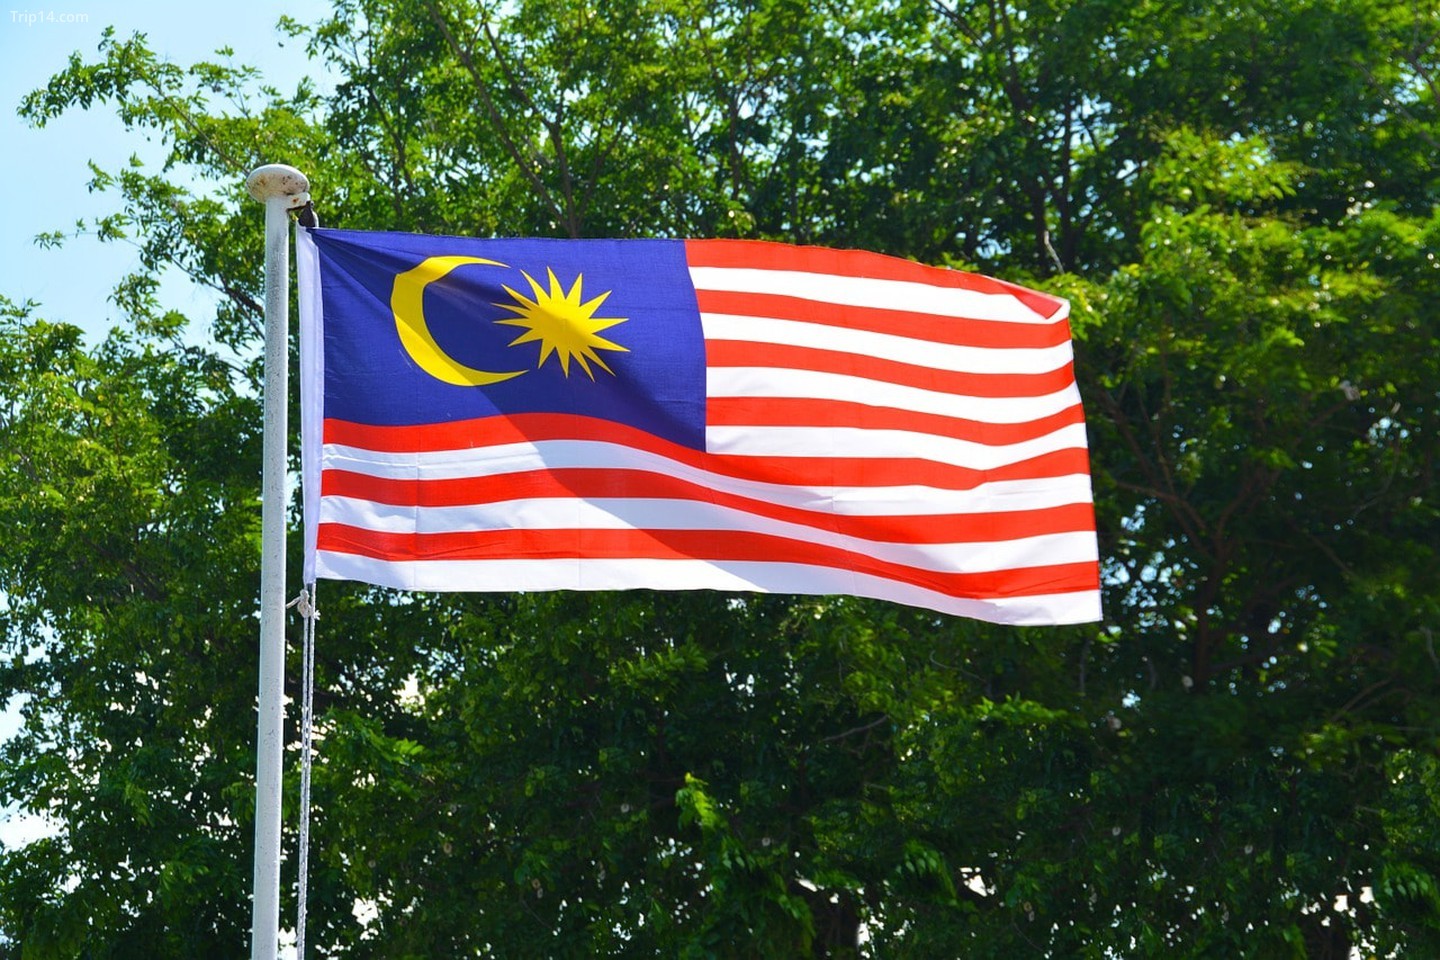 Ý nghĩa quốc kỳ Malaysia 2024 thể hiện sự đoàn kết, tôn vinh văn hóa và lịch sử của đất nước. Quốc kỳ đại diện cho niềm tự hào, sự độc lập và sự tiến bộ. Hãy cùng tìm hiểu về ý nghĩa sâu sắc của quốc kỳ này.